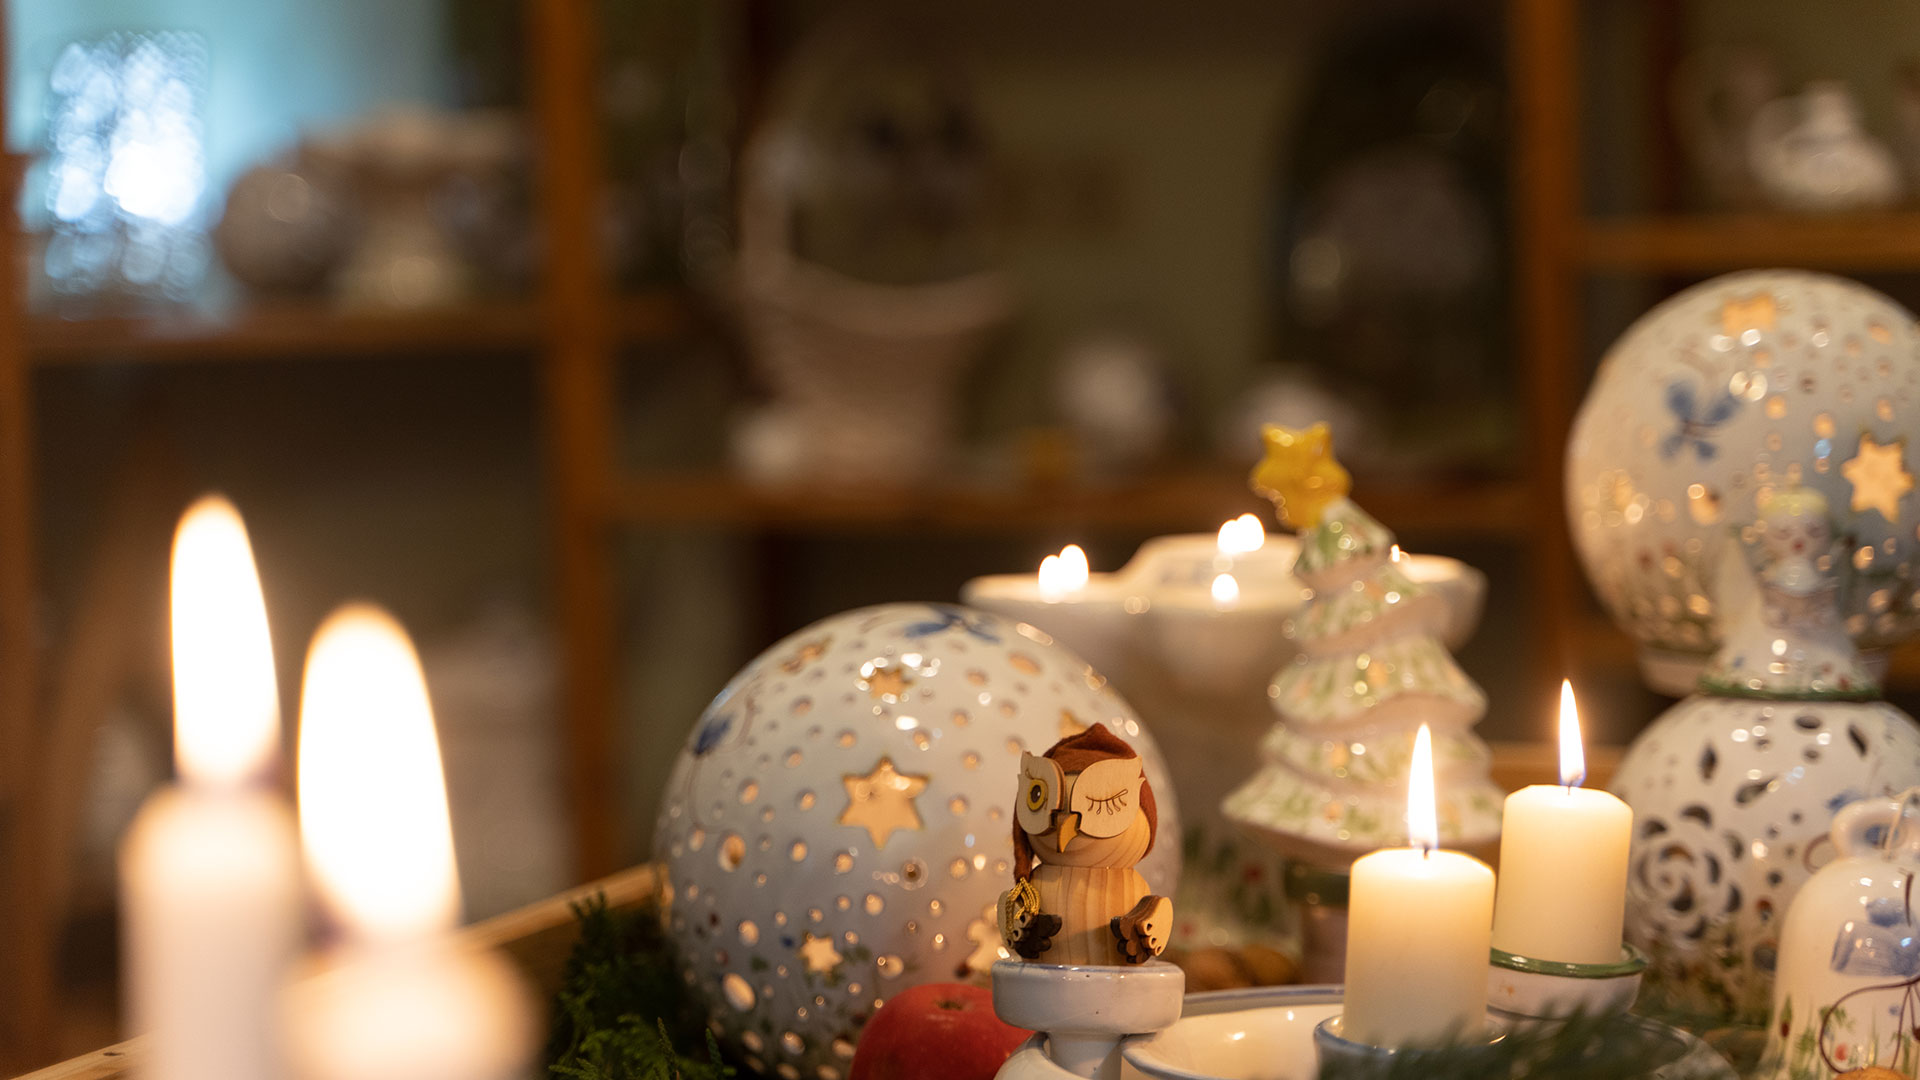 Weihnachtskeramik mit Eule und Kerzen